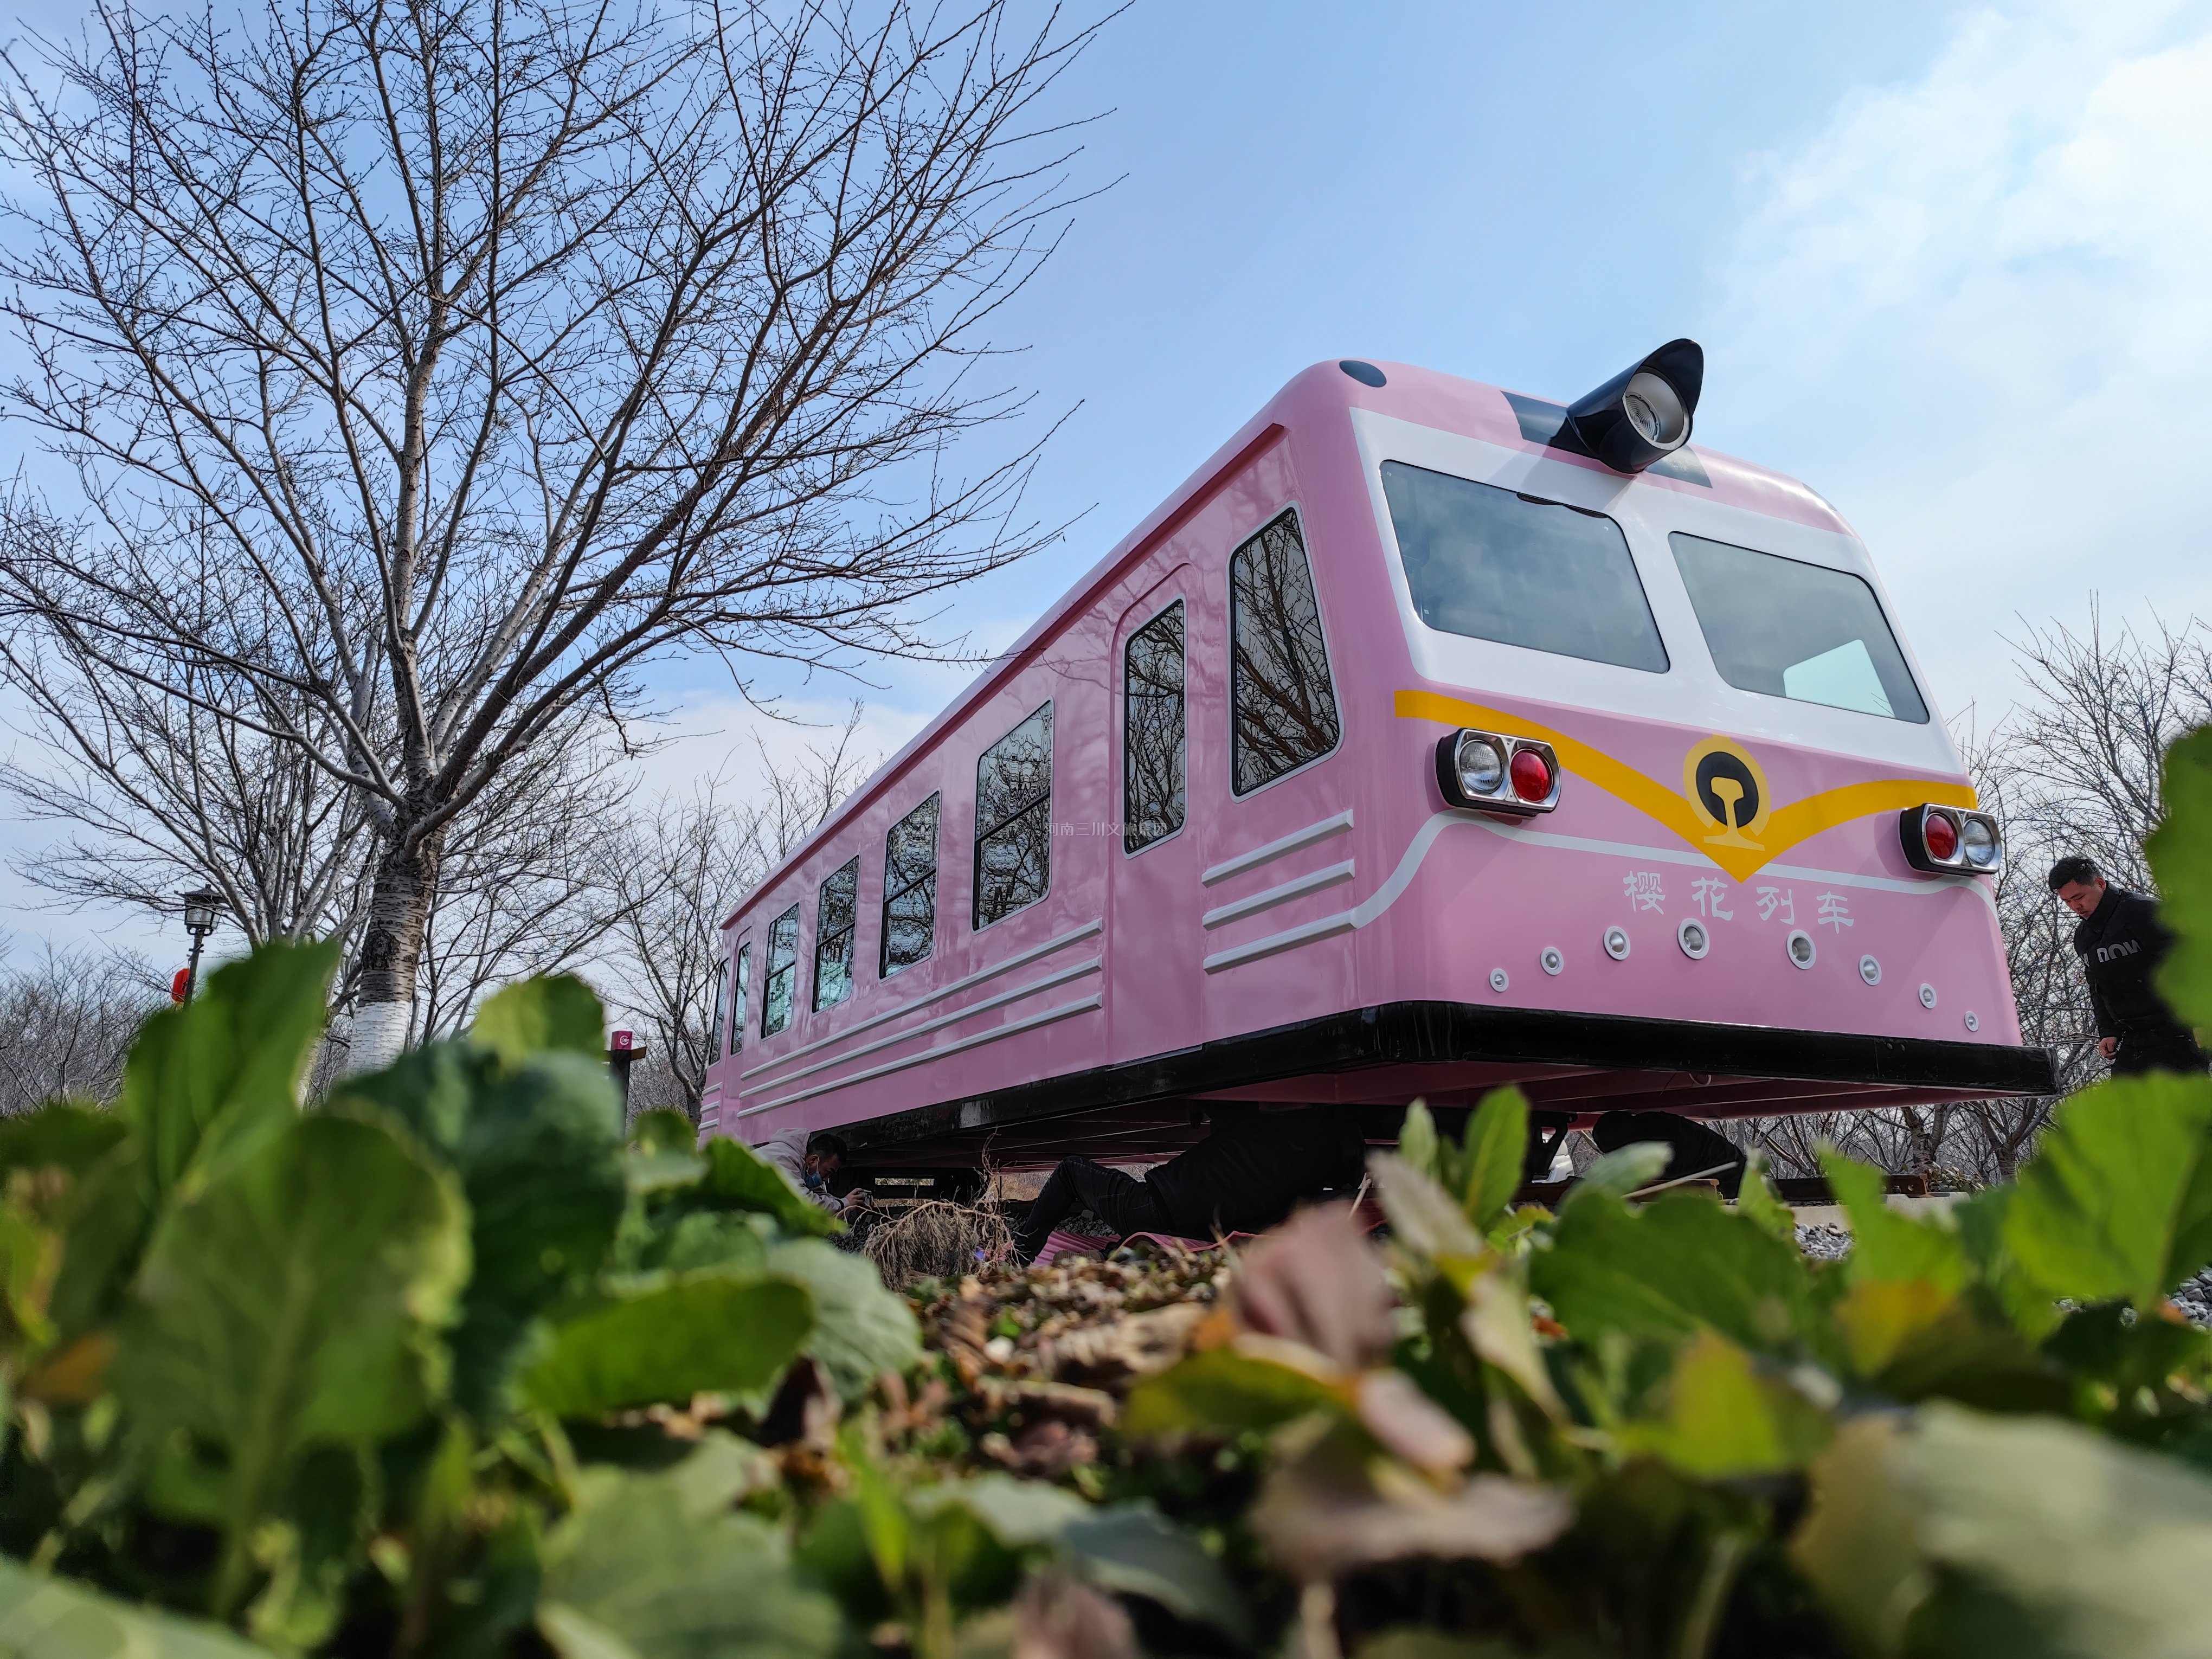 丰乐樱花园—樱花列车